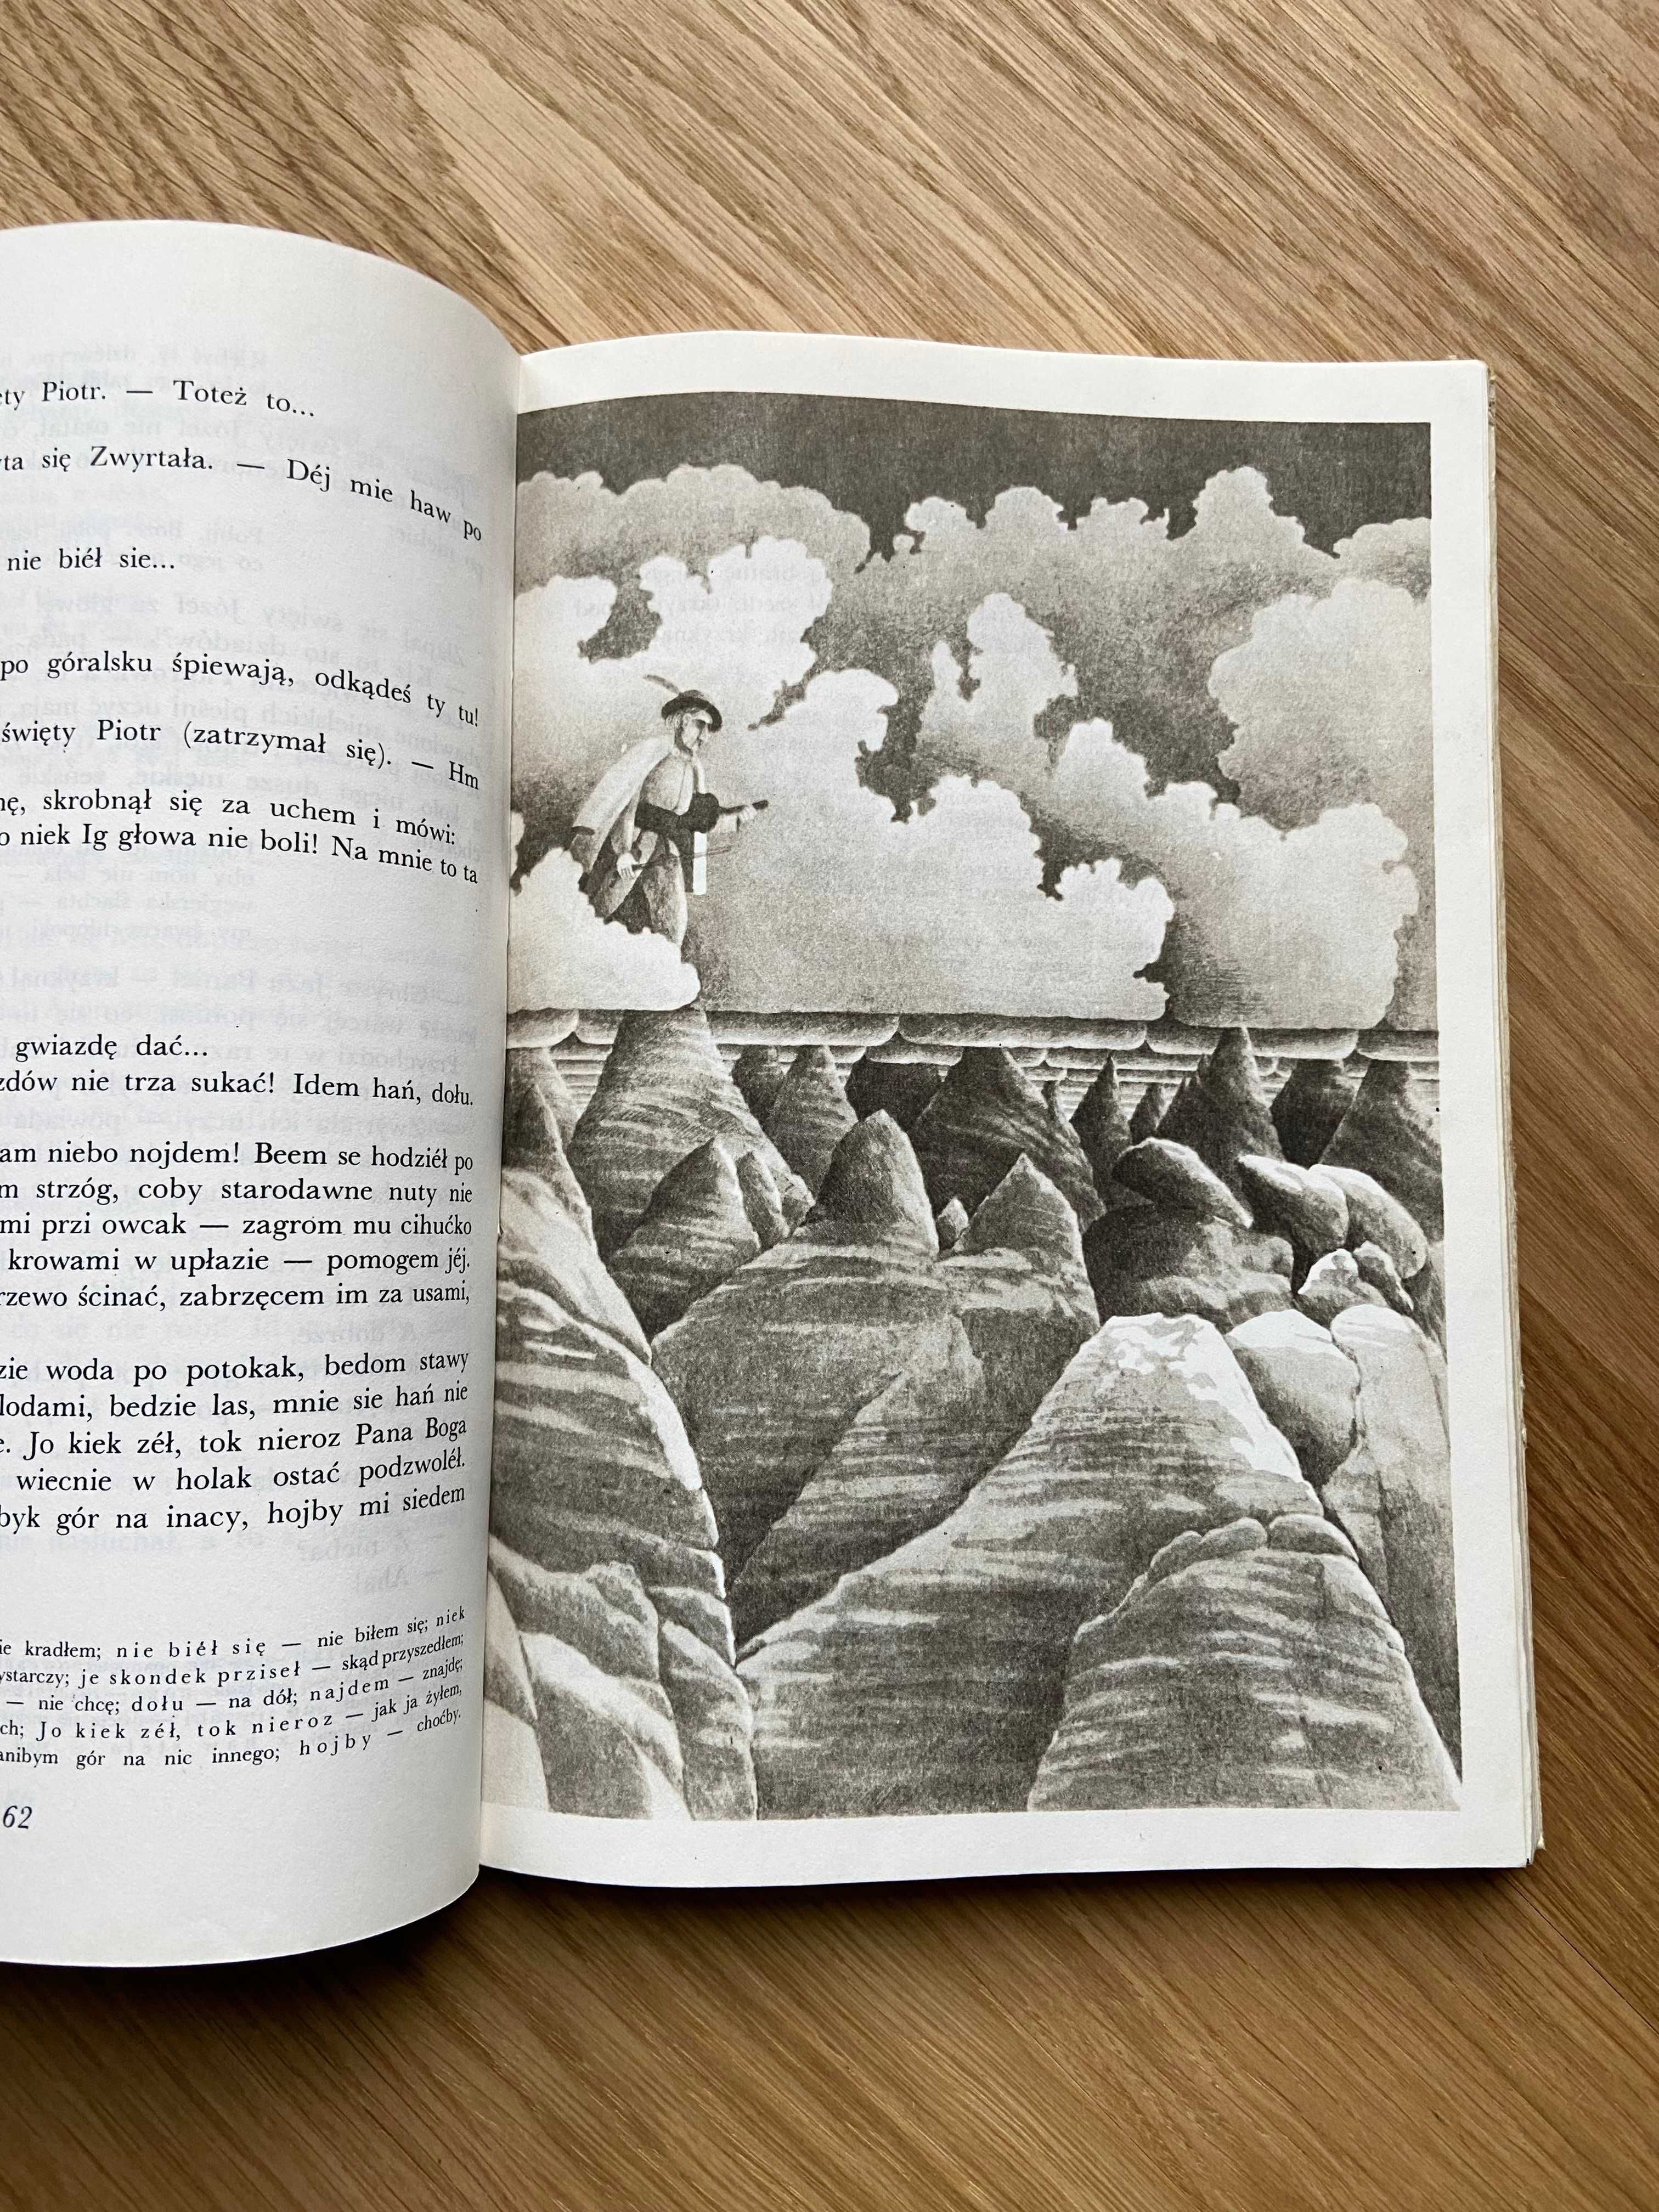 Opowieści o nieumierającym świecie, ilustracje, książka 1984